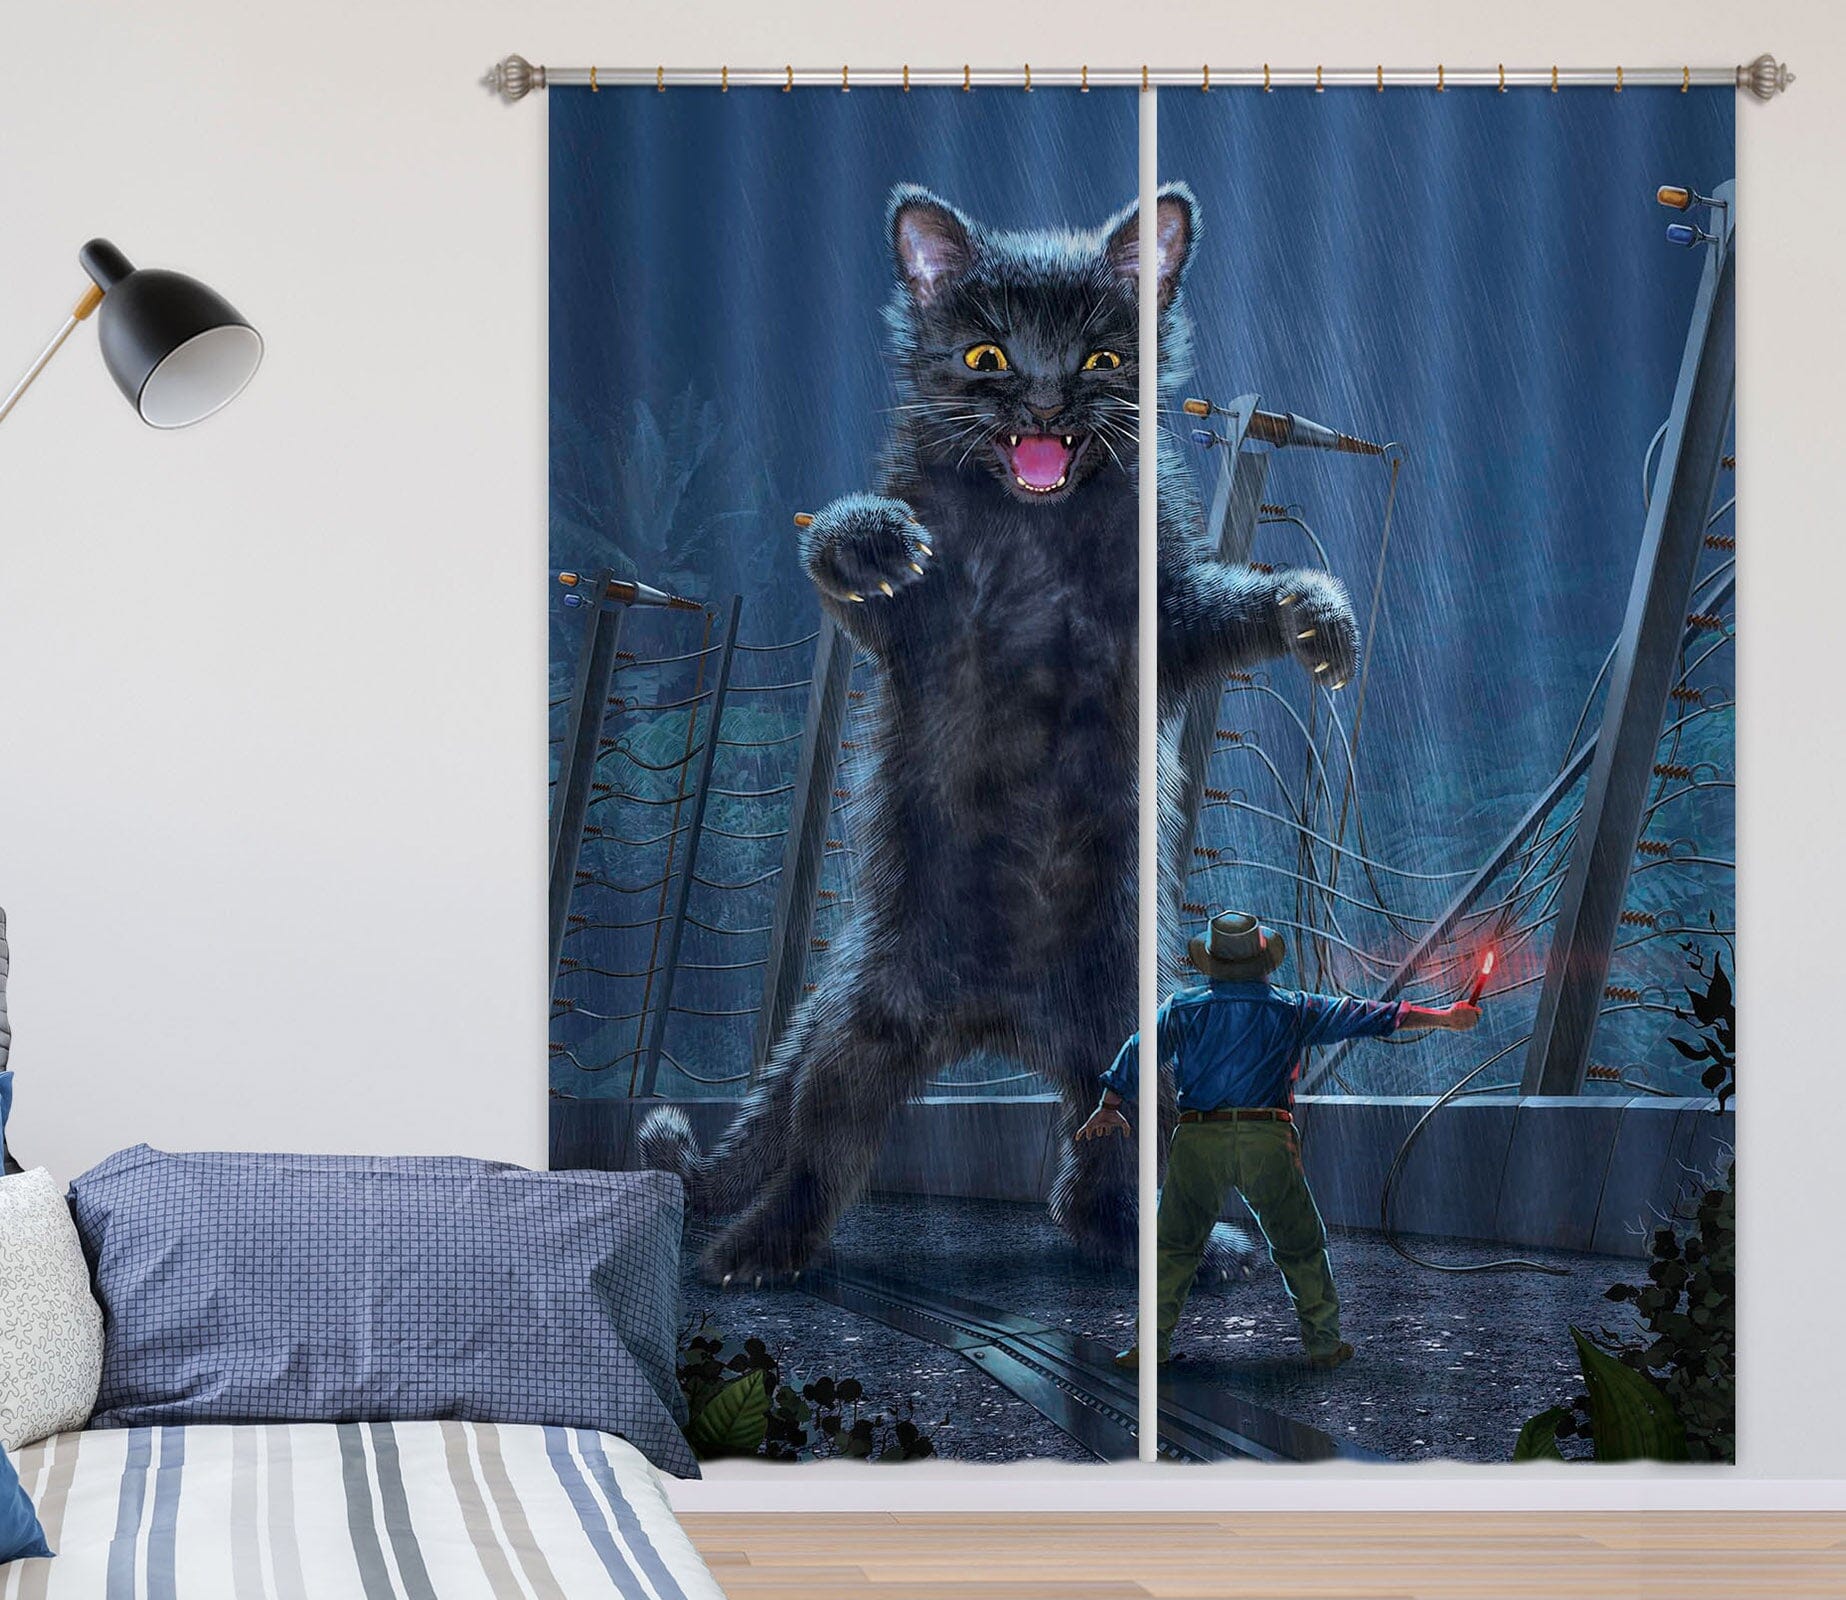 3D Jurassic Kitty 047 Vincent Hie Curtain Curtains Drapes Curtains AJ Creativity Home 